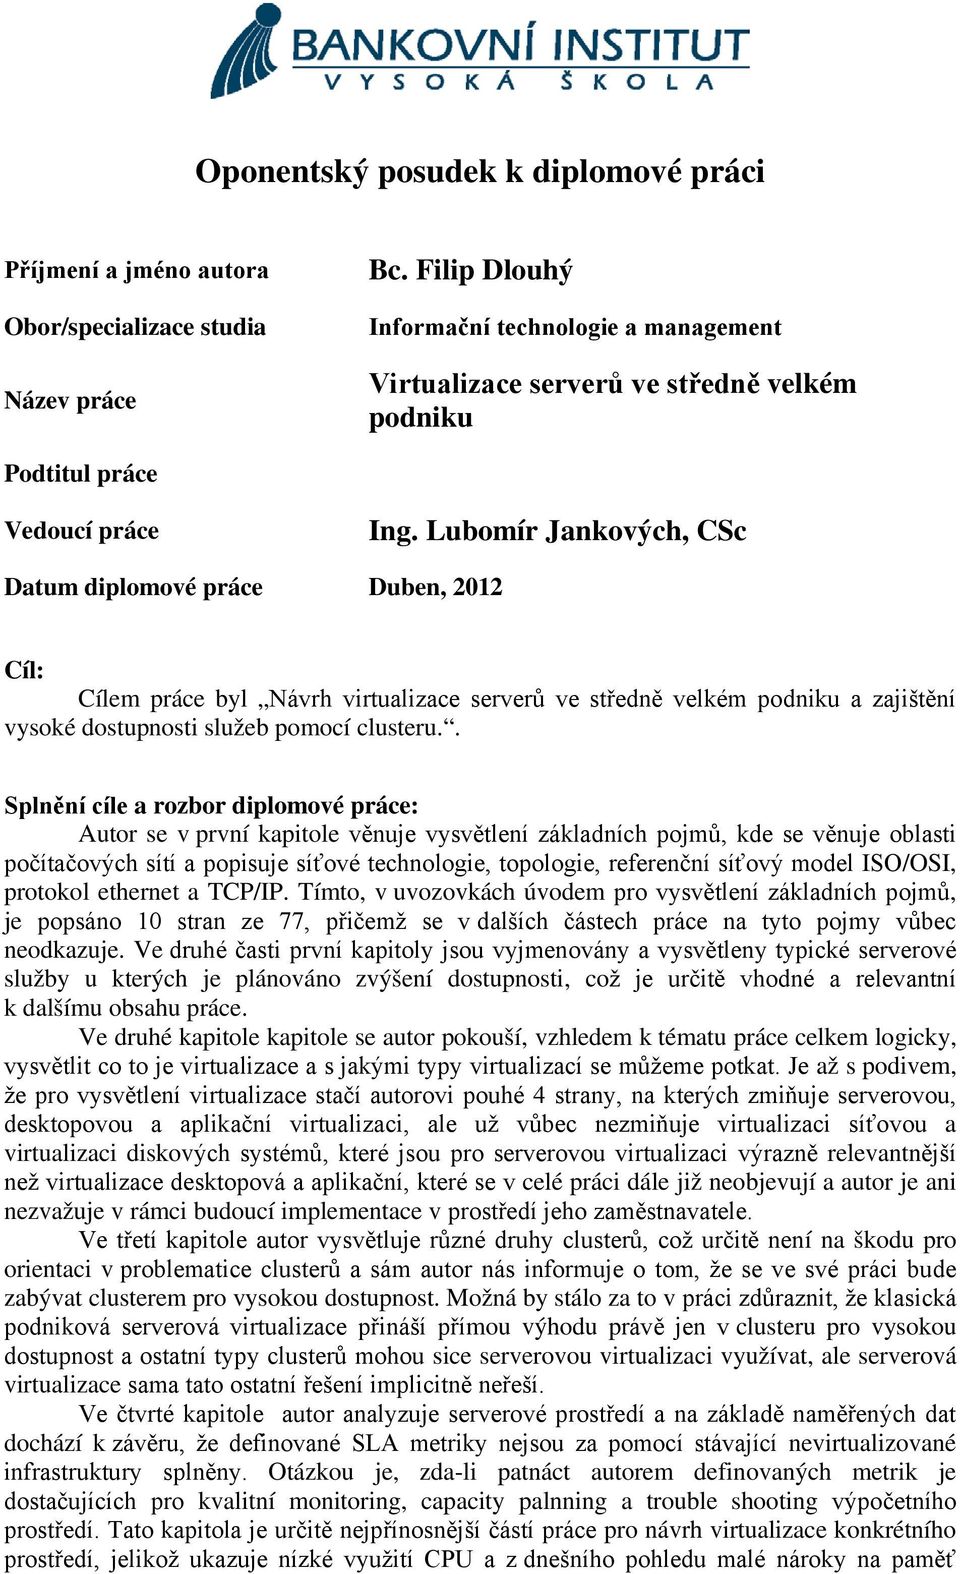 Lubomír Jankových, CSc Datum diplomové práce Duben, 2012 Cíl: Cílem práce byl Návrh virtualizace serverů ve středně velkém podniku a zajištění vysoké dostupnosti služeb pomocí clusteru.